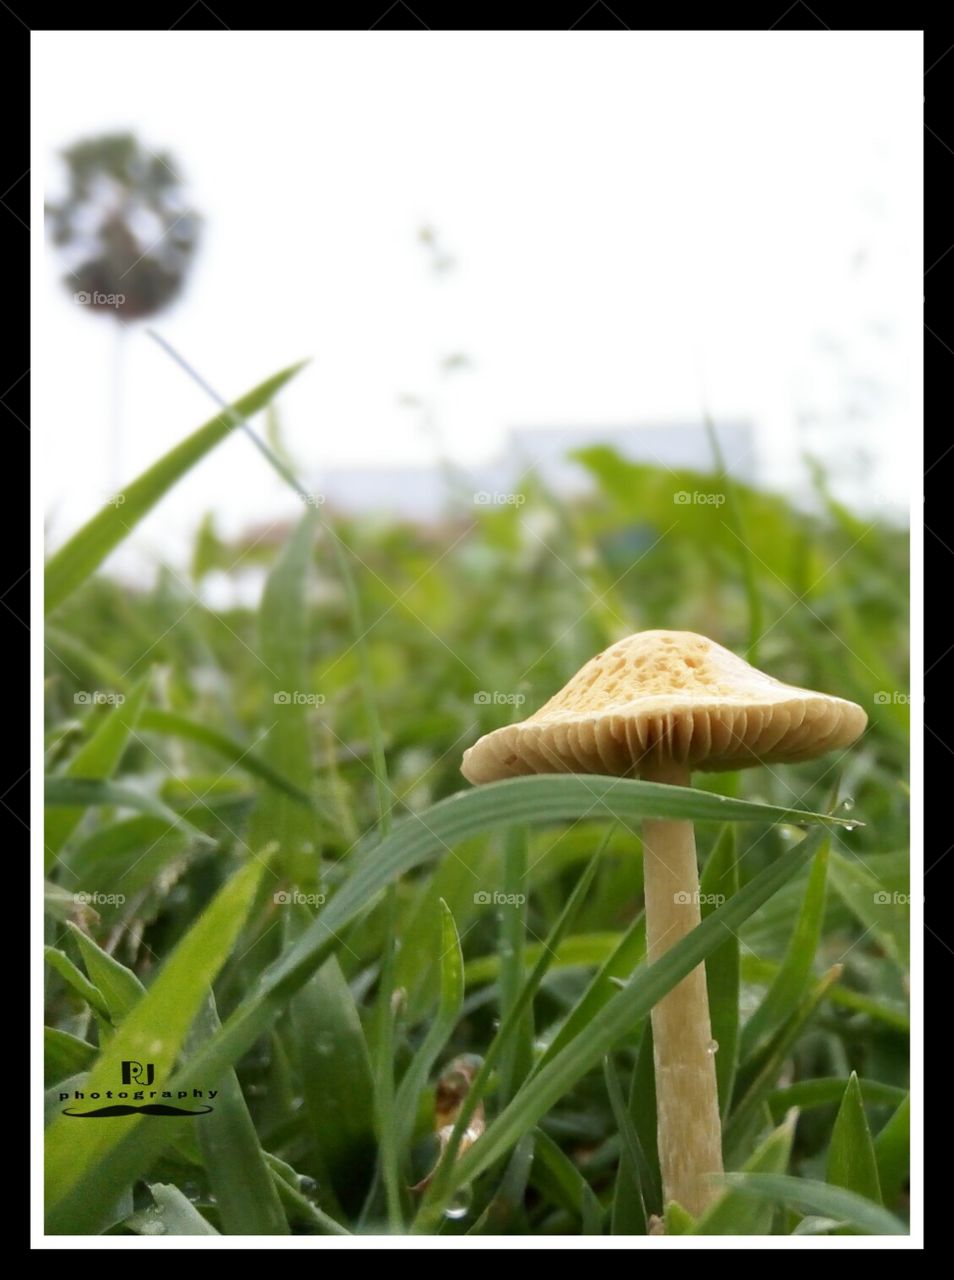 🍄 mushroom